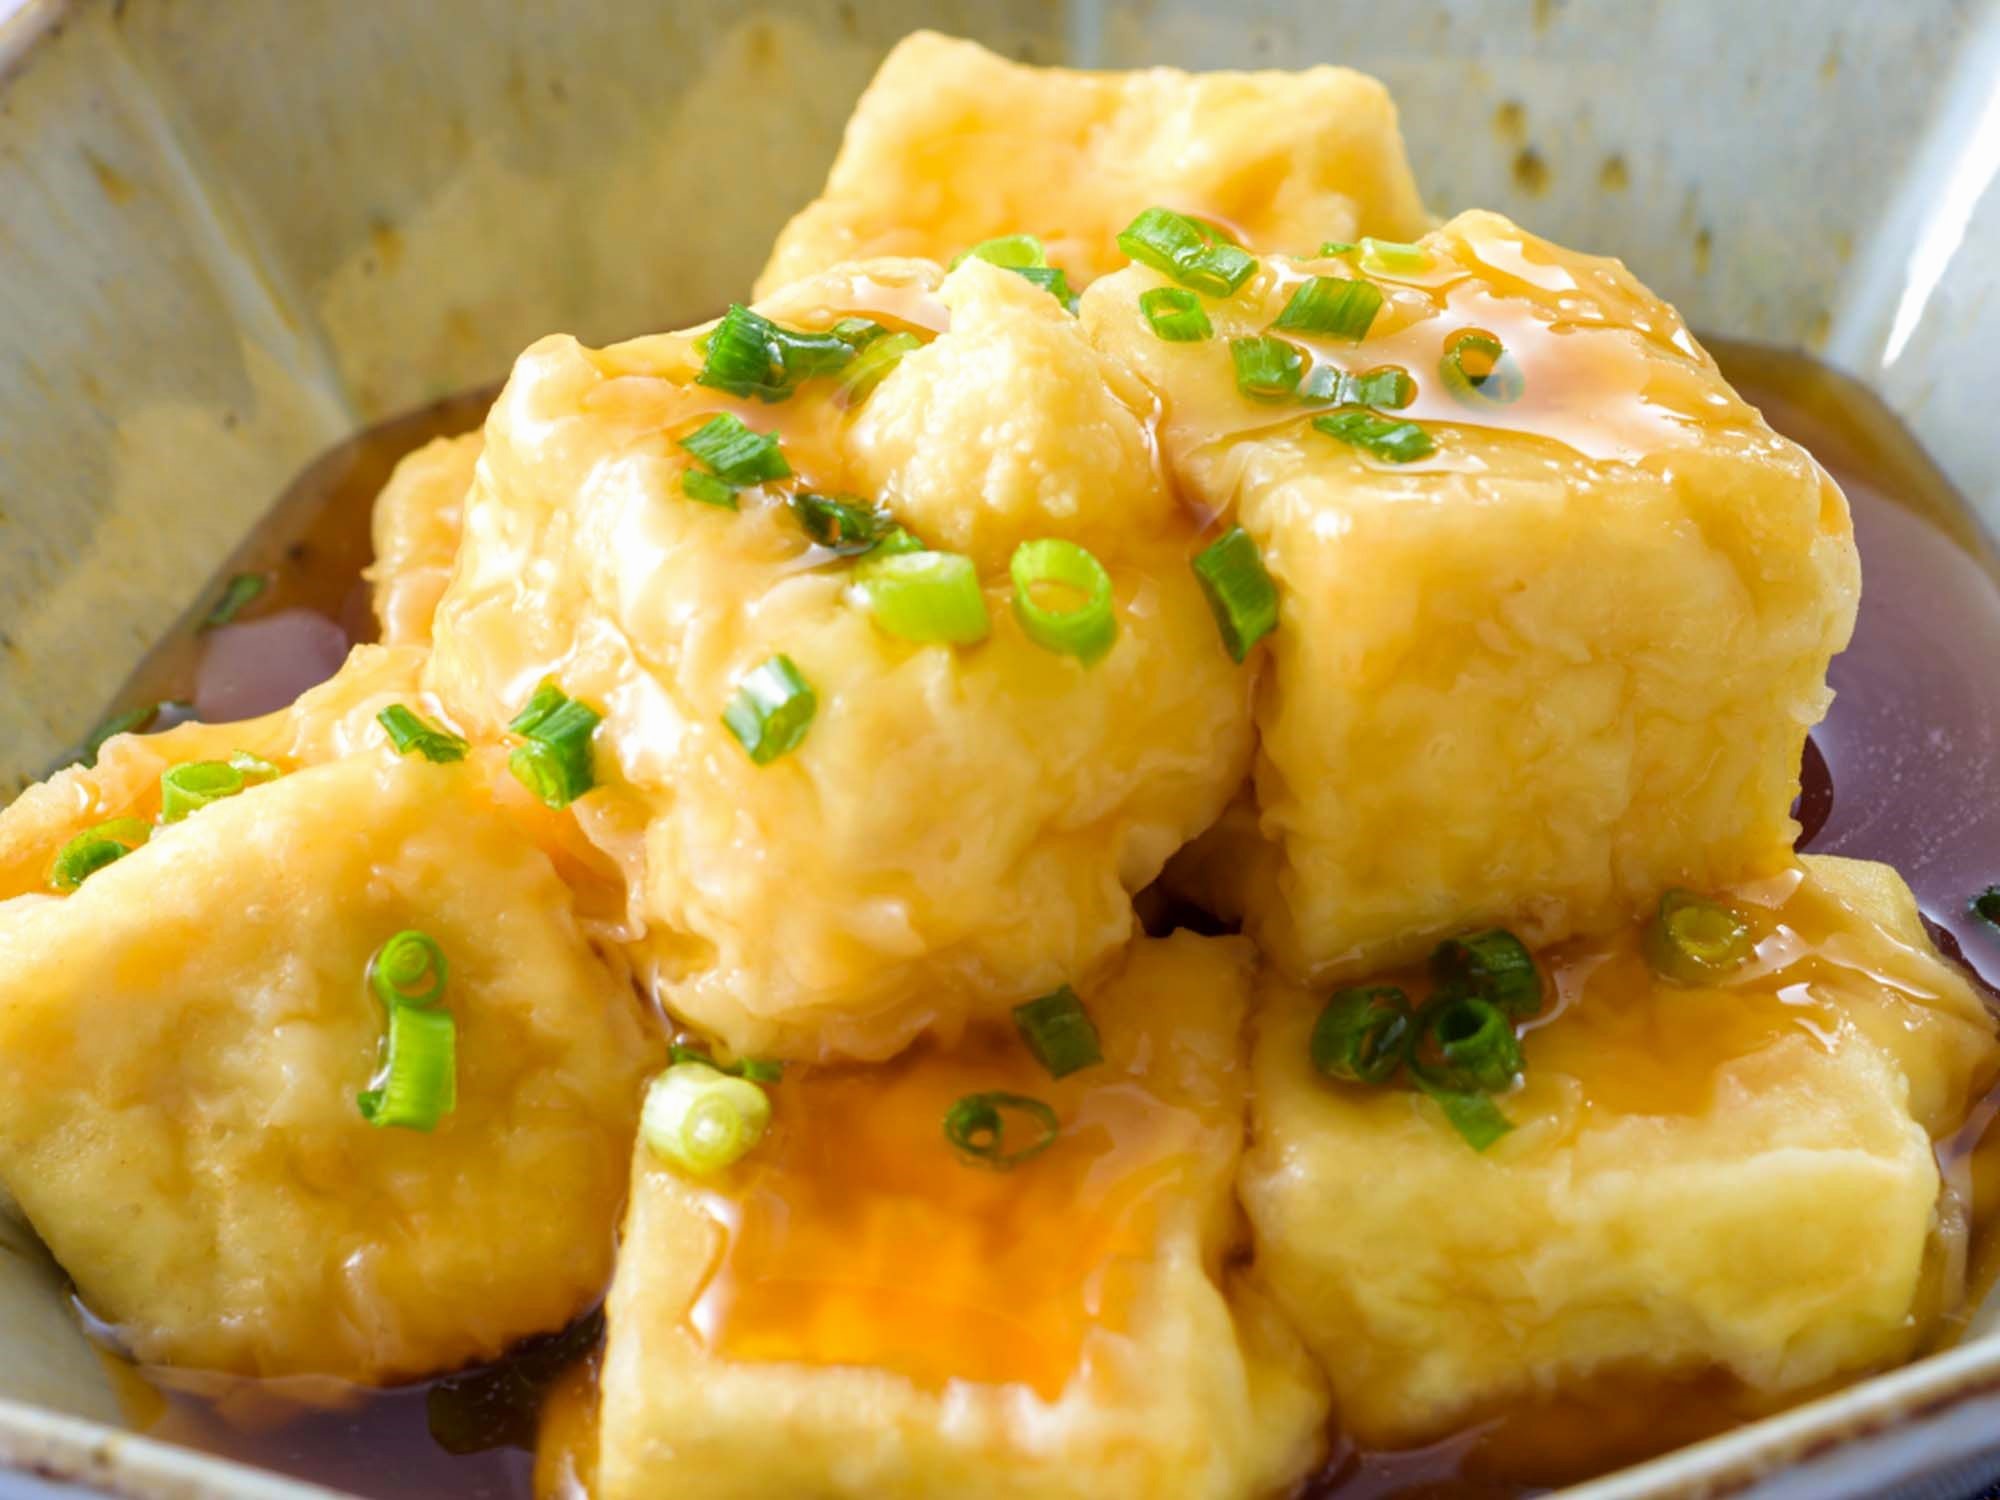 「カンタン酢」でさっぱり揚げ出し豆腐のレシピ・作り方